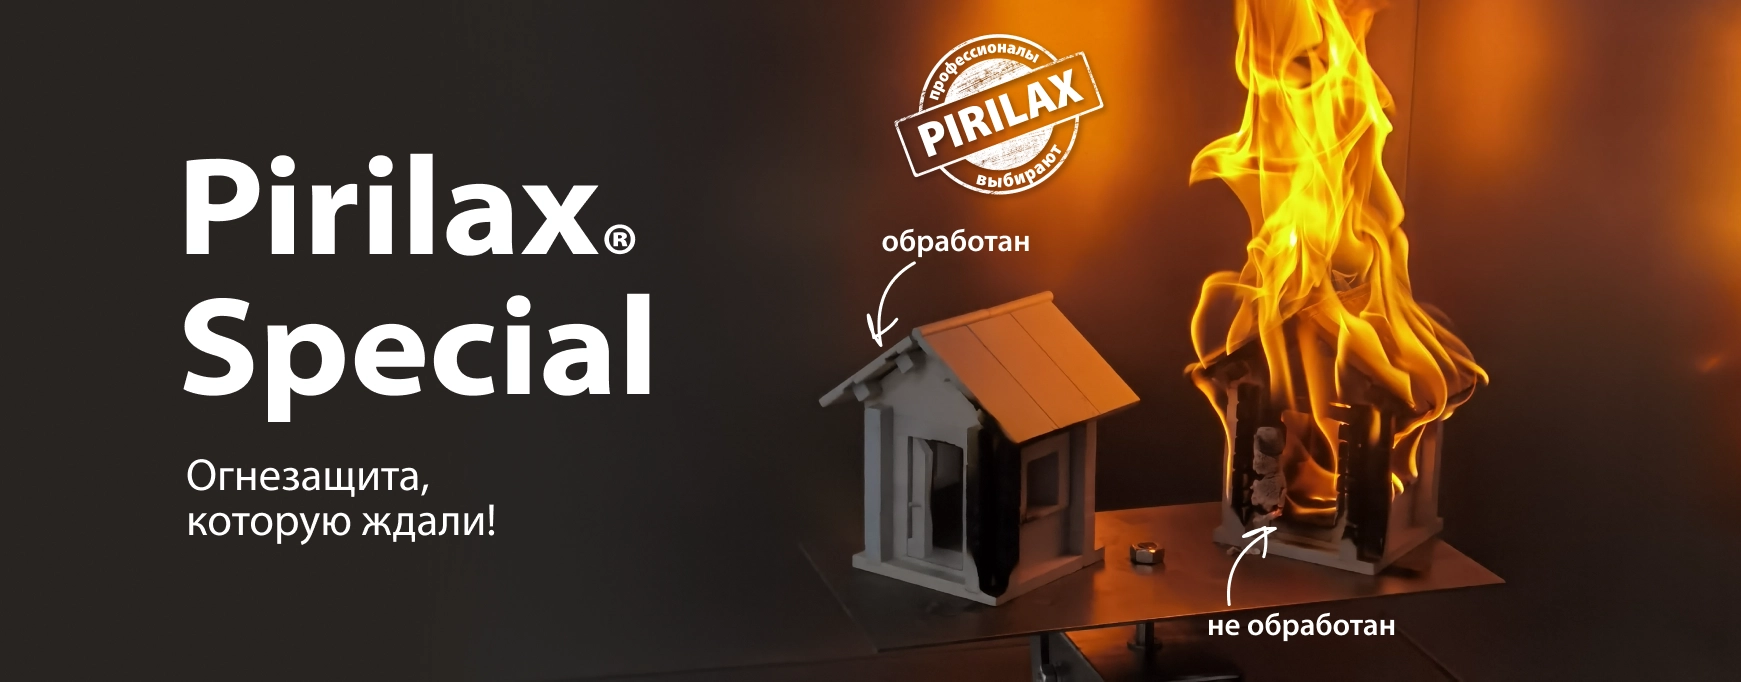 pirilax special